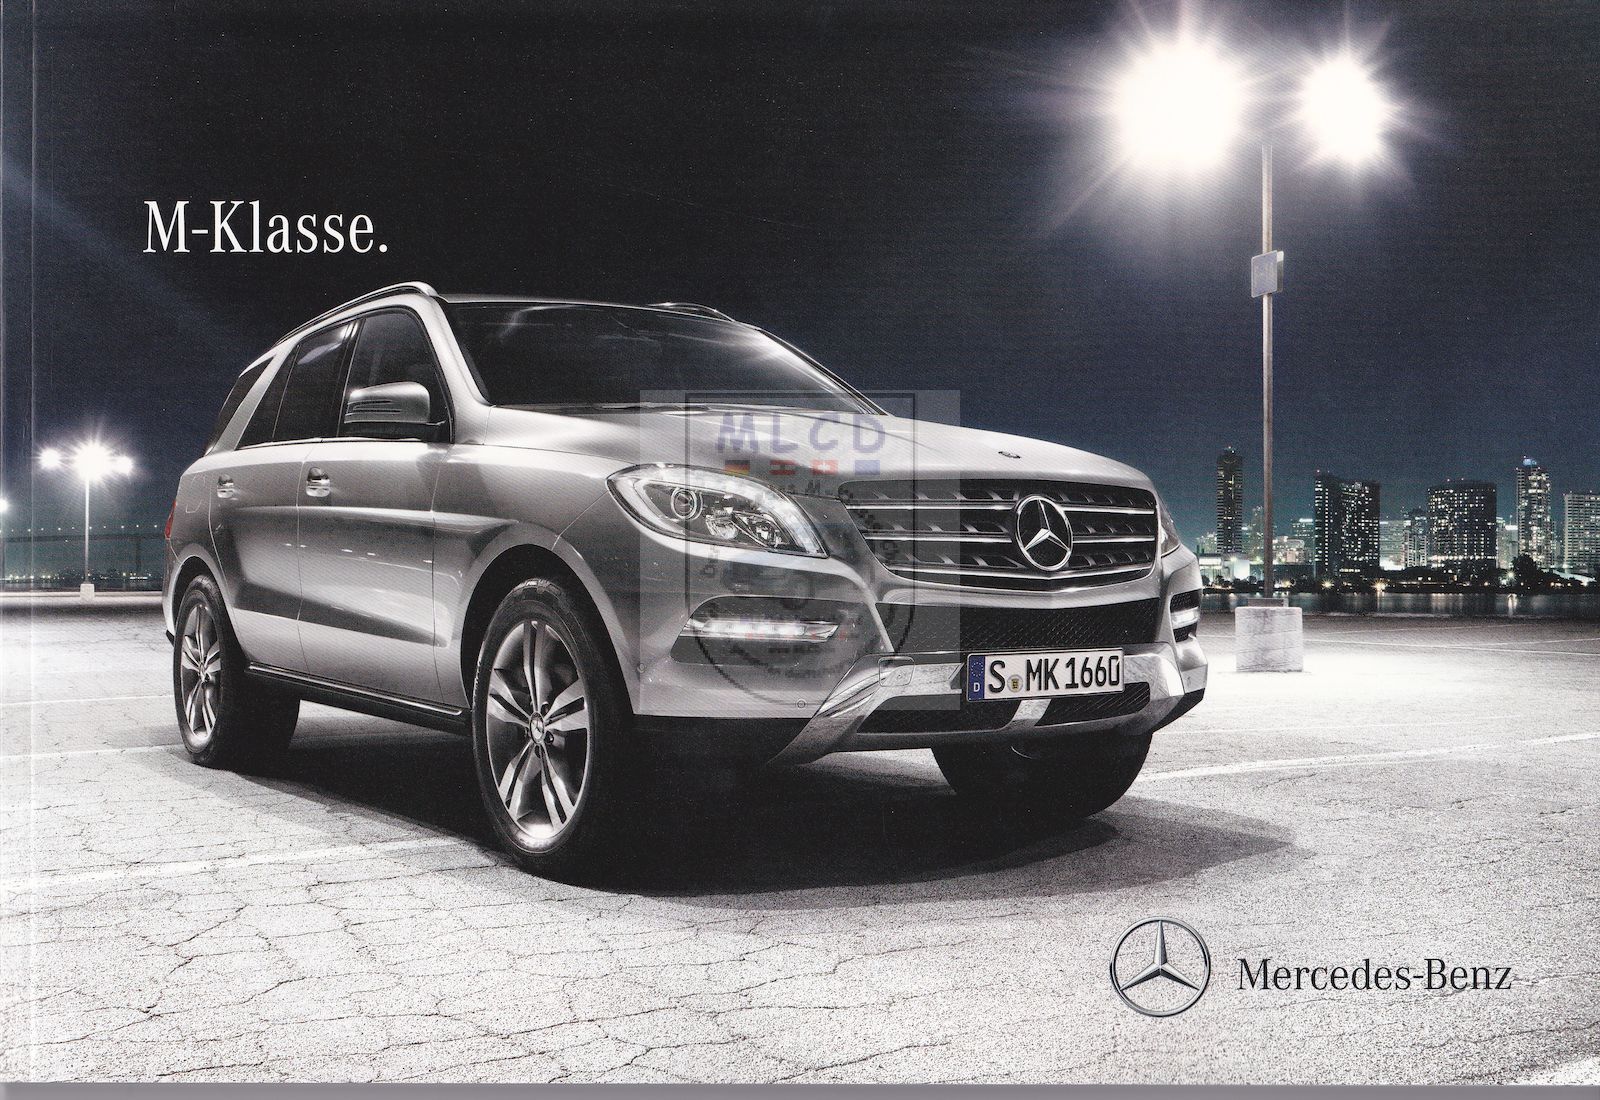 Mercedes-Benz W166 M-Klasse. Katalog 2013 06 Juni